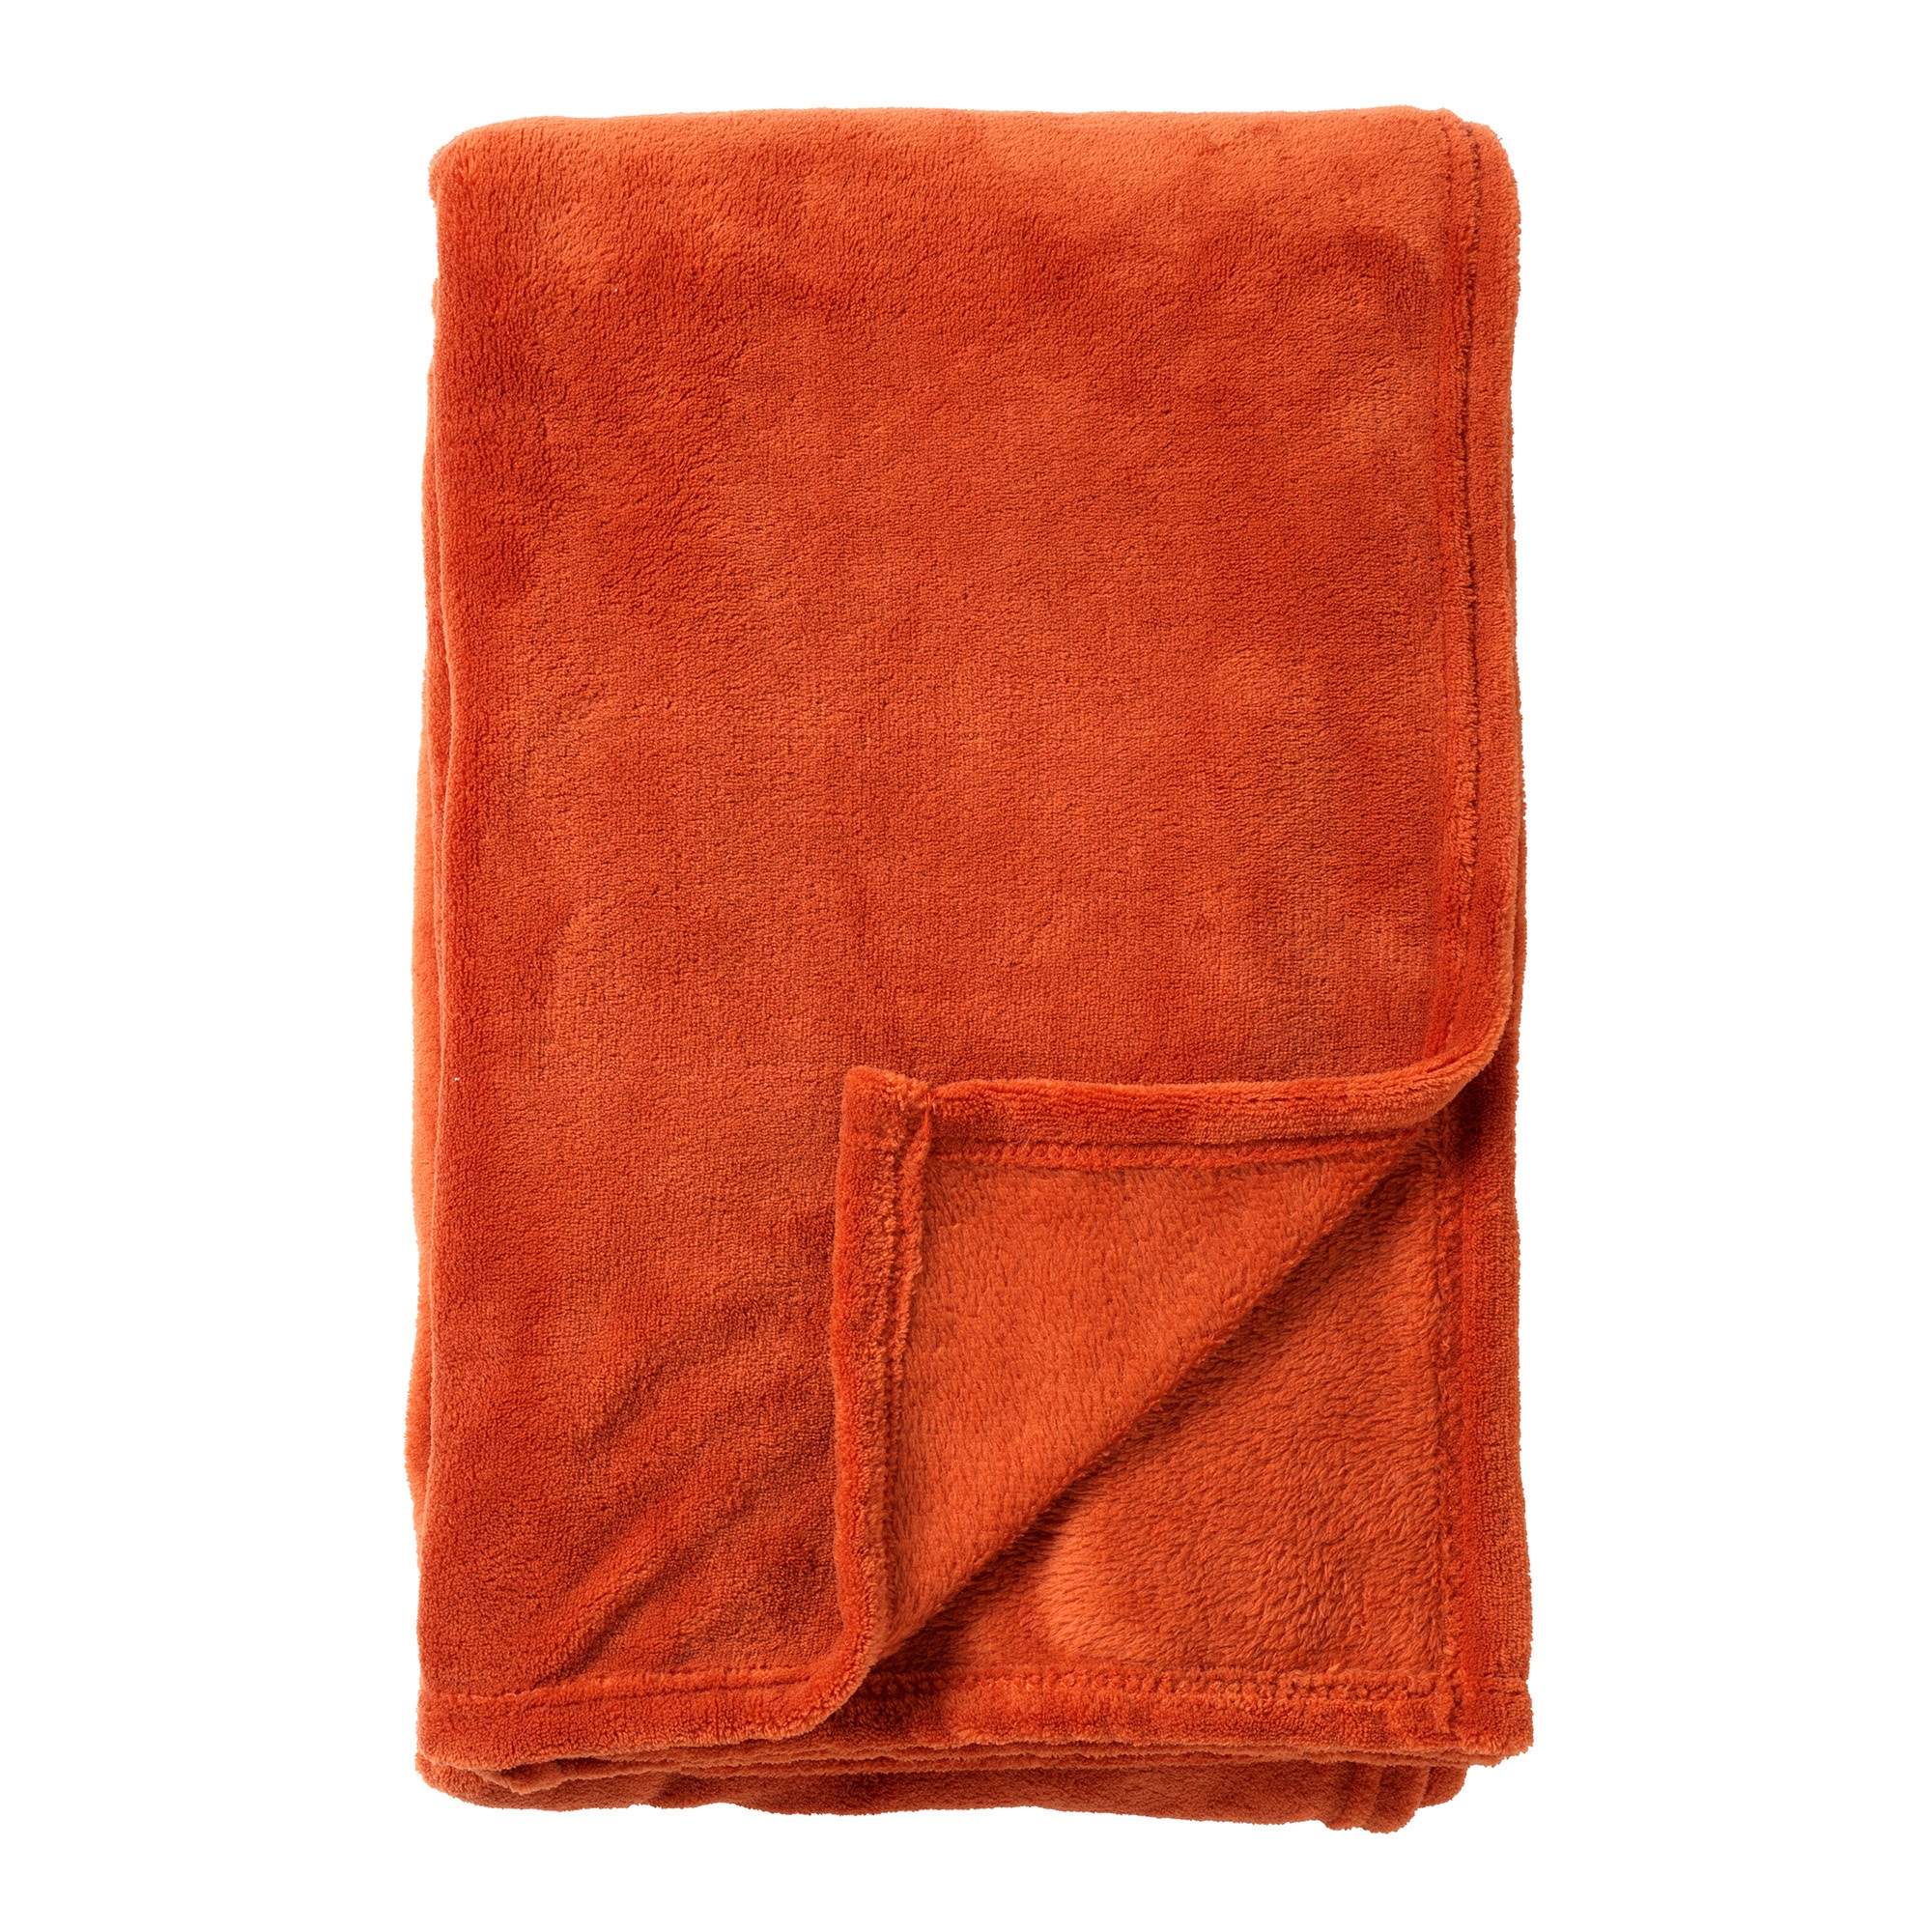 HARVEY - Plaid 150x200 cm - superzachte deken van fleece - Potters Clay - oranje terra